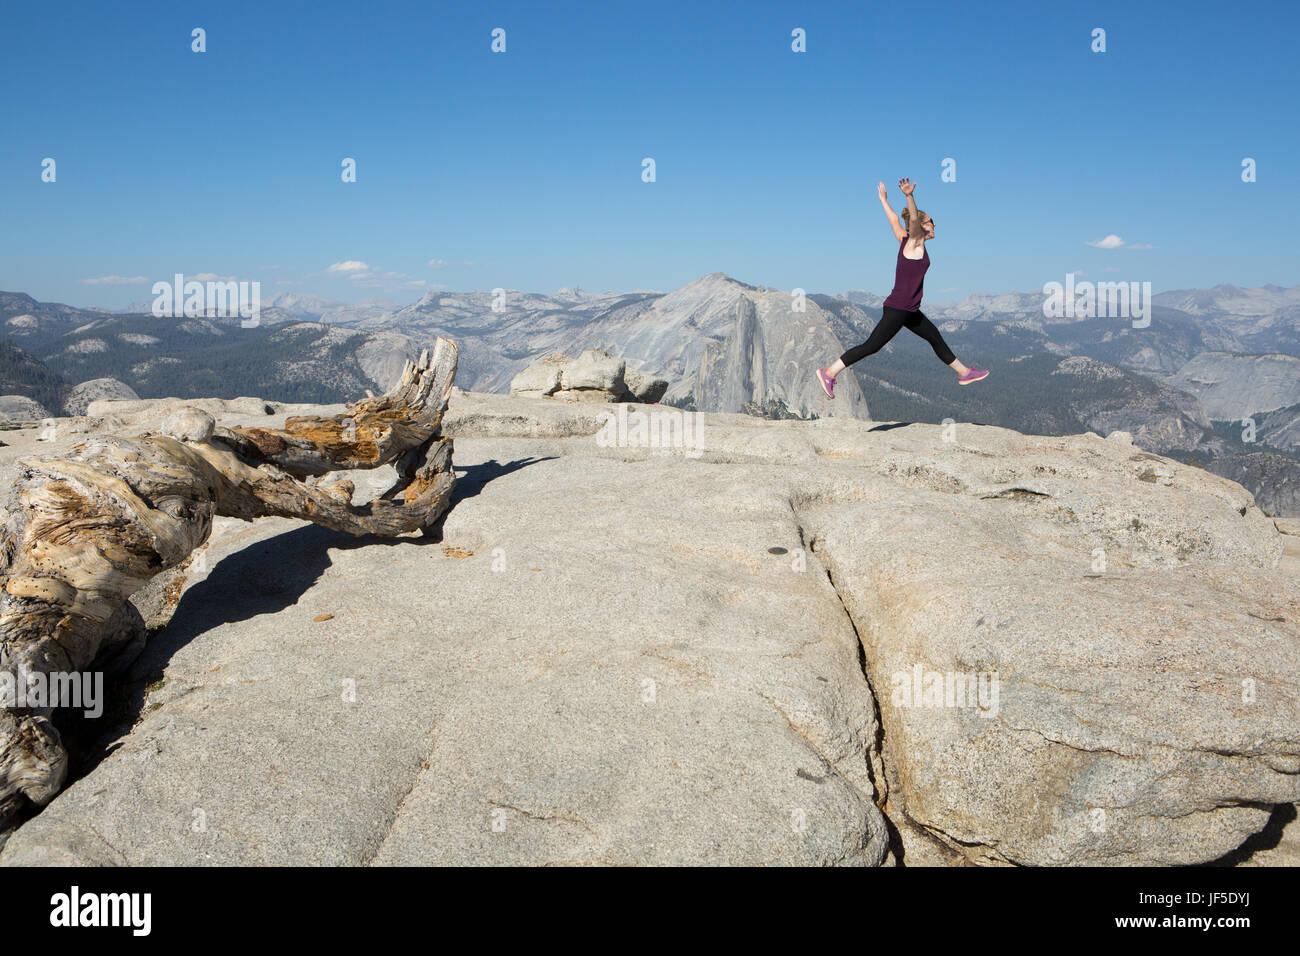 Un escursionista graziosamente salti, in un balletto motion, sulla cima di Sentinel Dome, un picco roccioso che offre splendide vedute sulla valle di Yosemite. Foto Stock